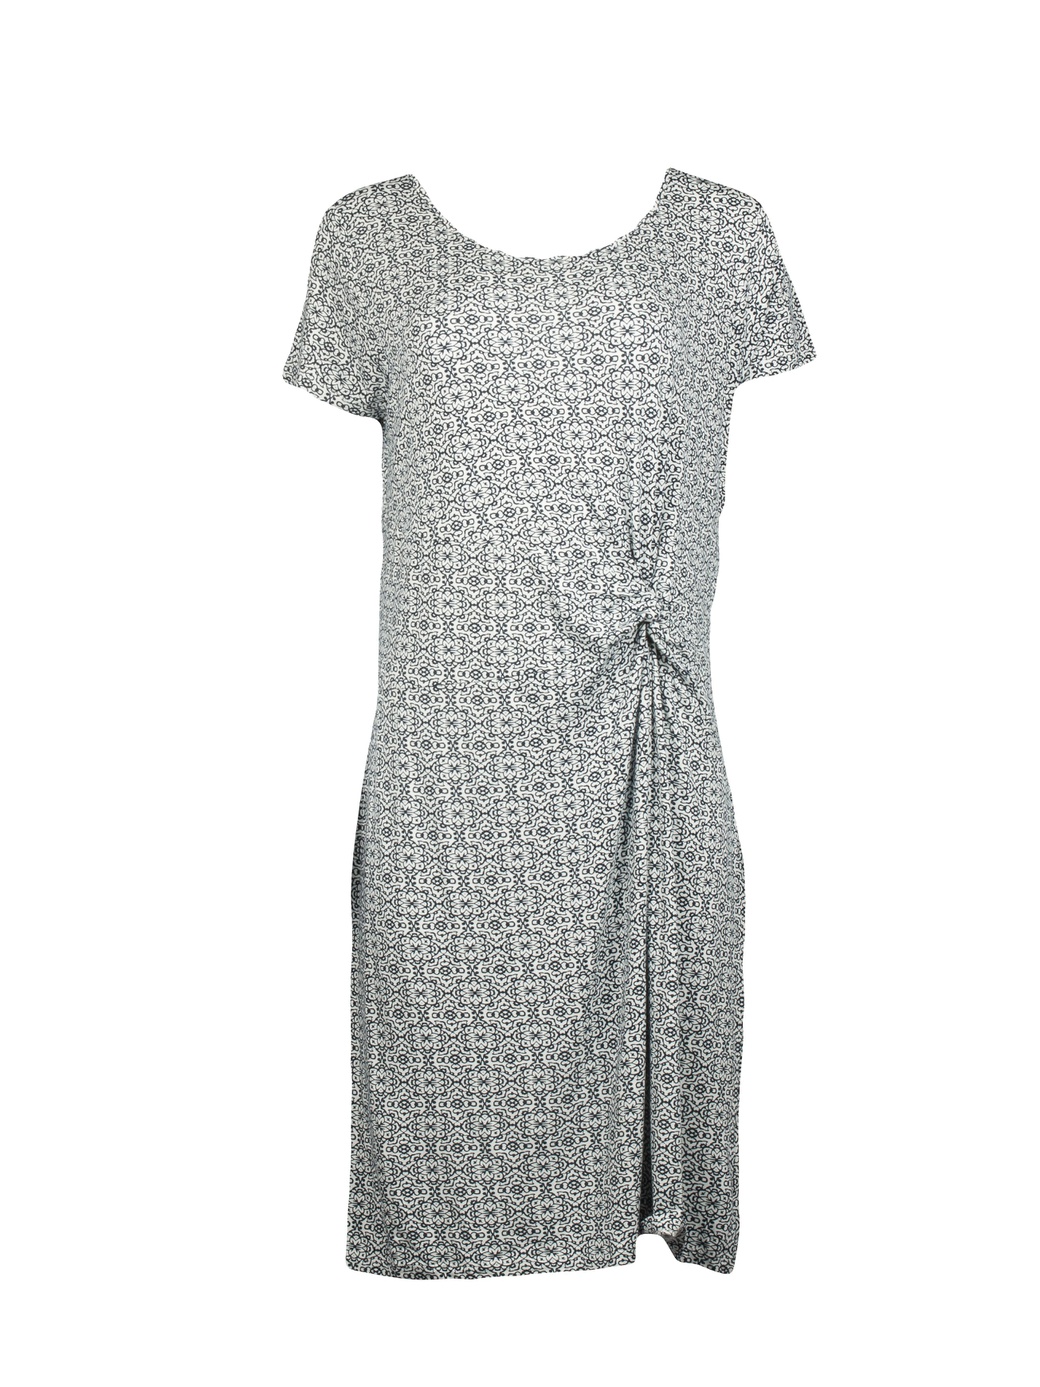 Платье Betty Barclay в цветочный принт 1034-0562-8813, белый, 44 фото